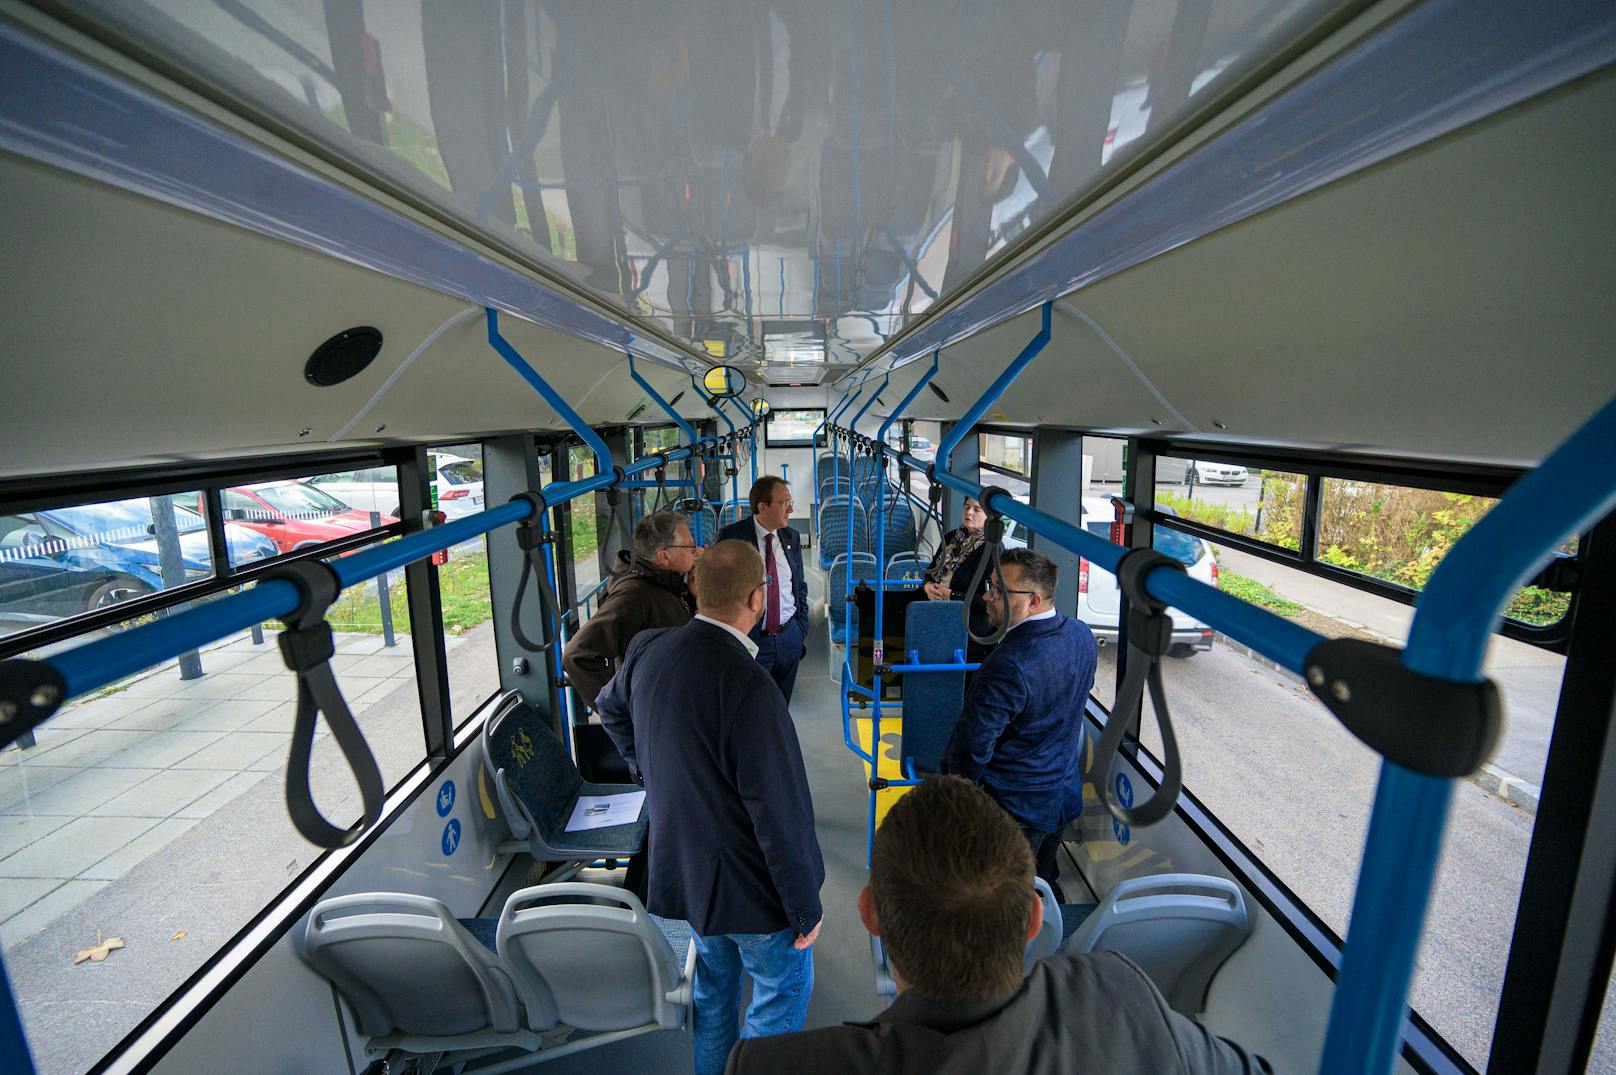 Bürgermeister Matthias Stadler mit Vertreter des Busbetreibers und des Busherstellers bei der Erstbesichtigung des Elektro-Ikarus.